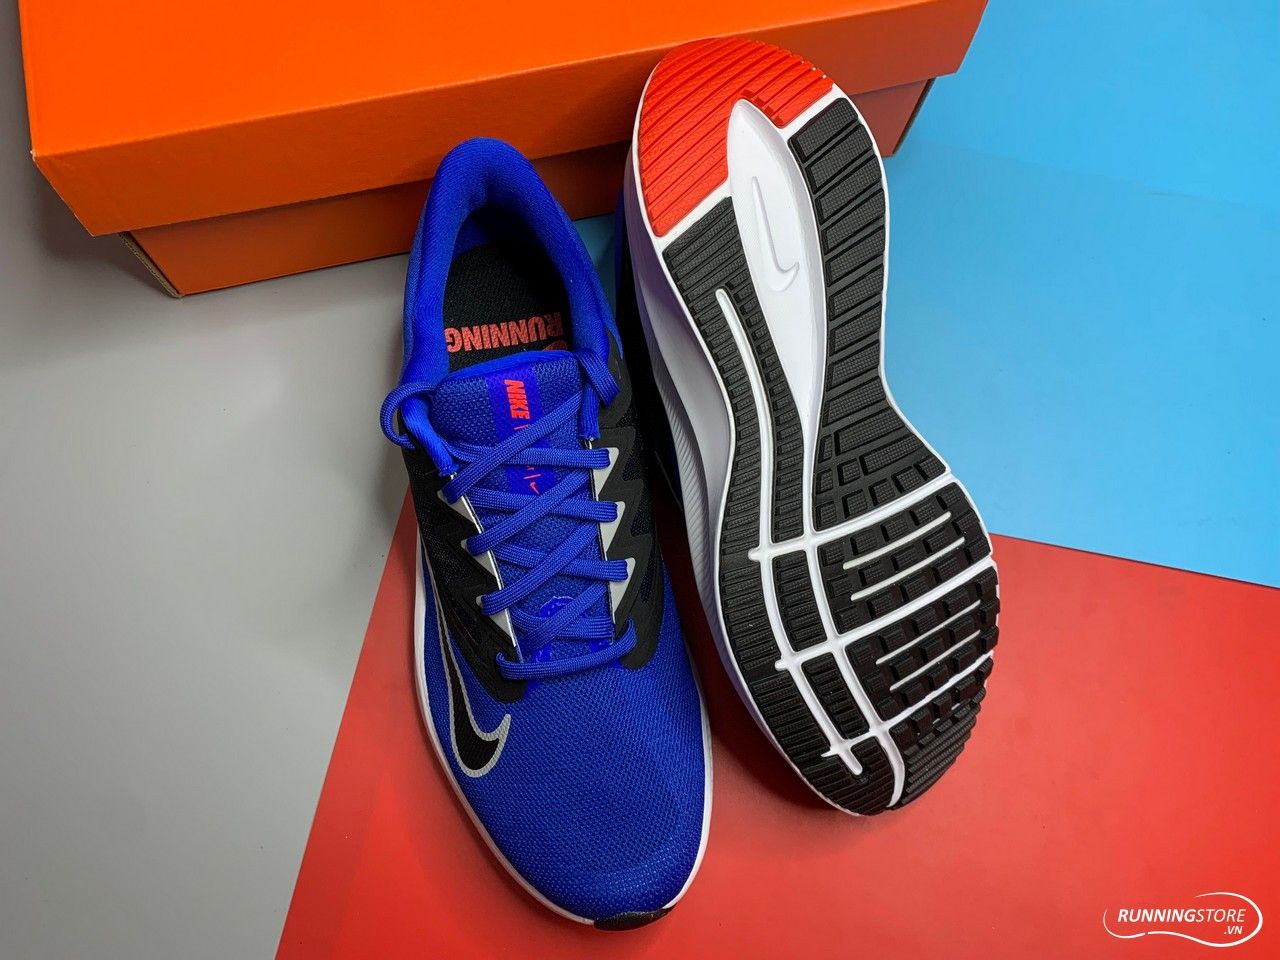 Giày Nike Quest 3 – Racer Blue/Lt Smoke Grey/Smoke – CD0230-400 màu xanh, đen